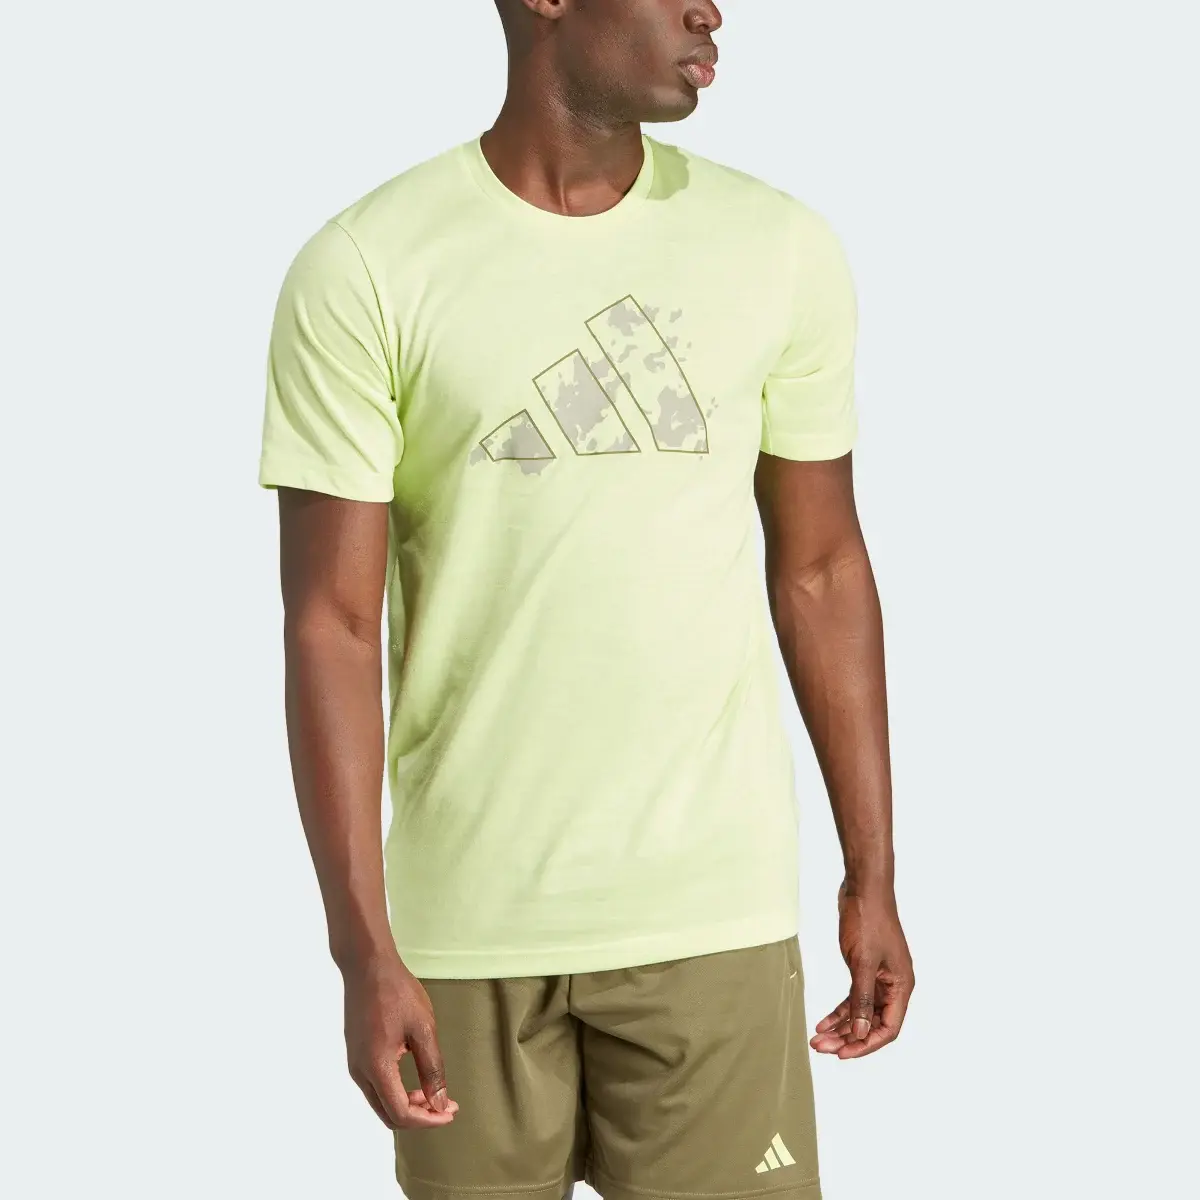 Adidas Train Essentials Seasonal Training Graphic T-Shirt. 1